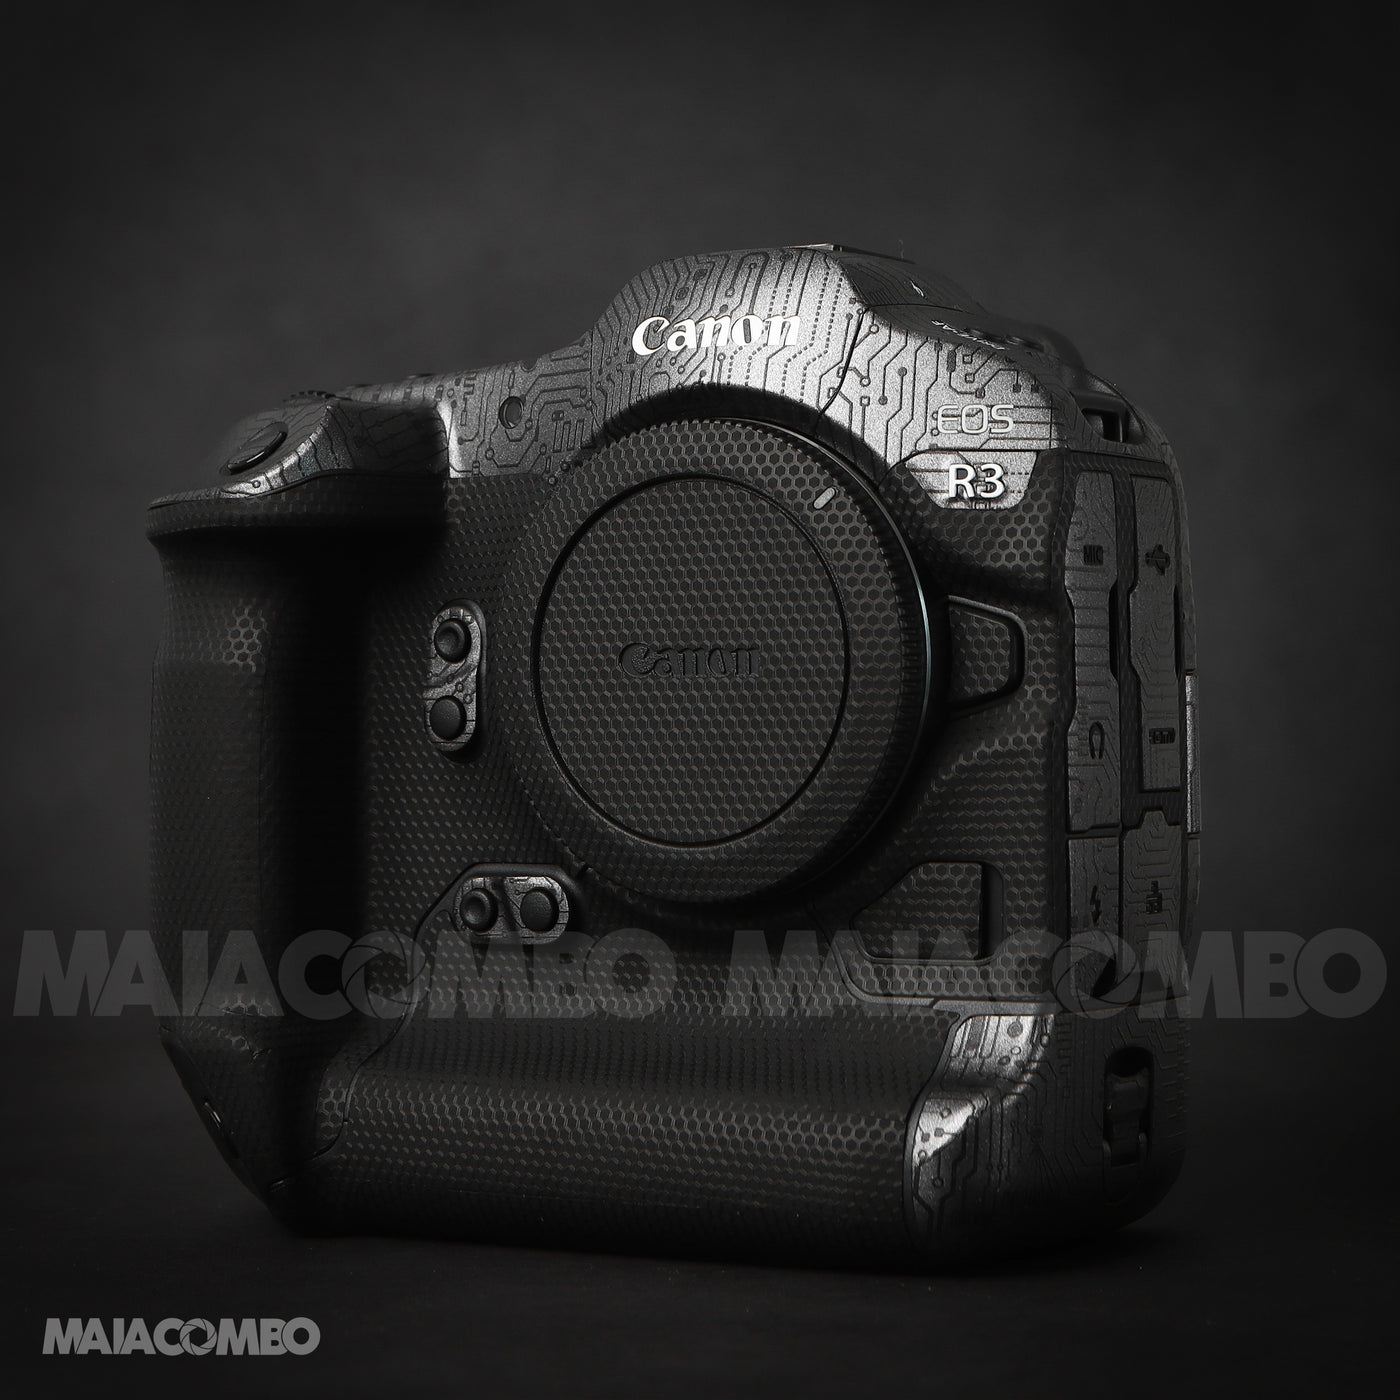 Canon EOS R3 Camera Skin